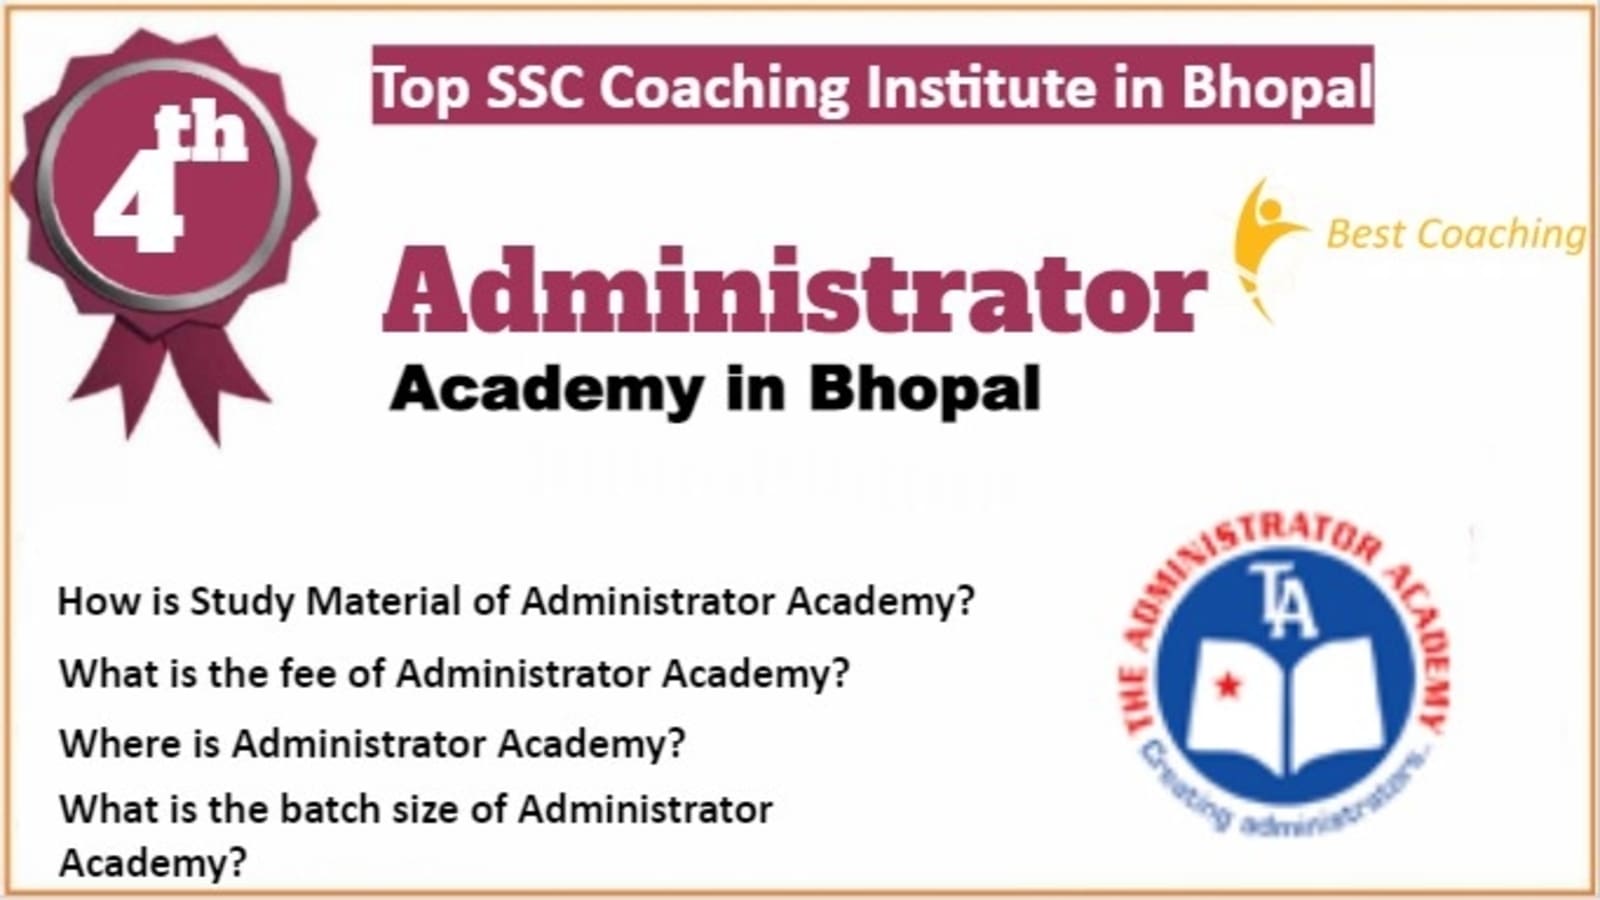 Rank 4 Best SSC Coaching in Bhopal